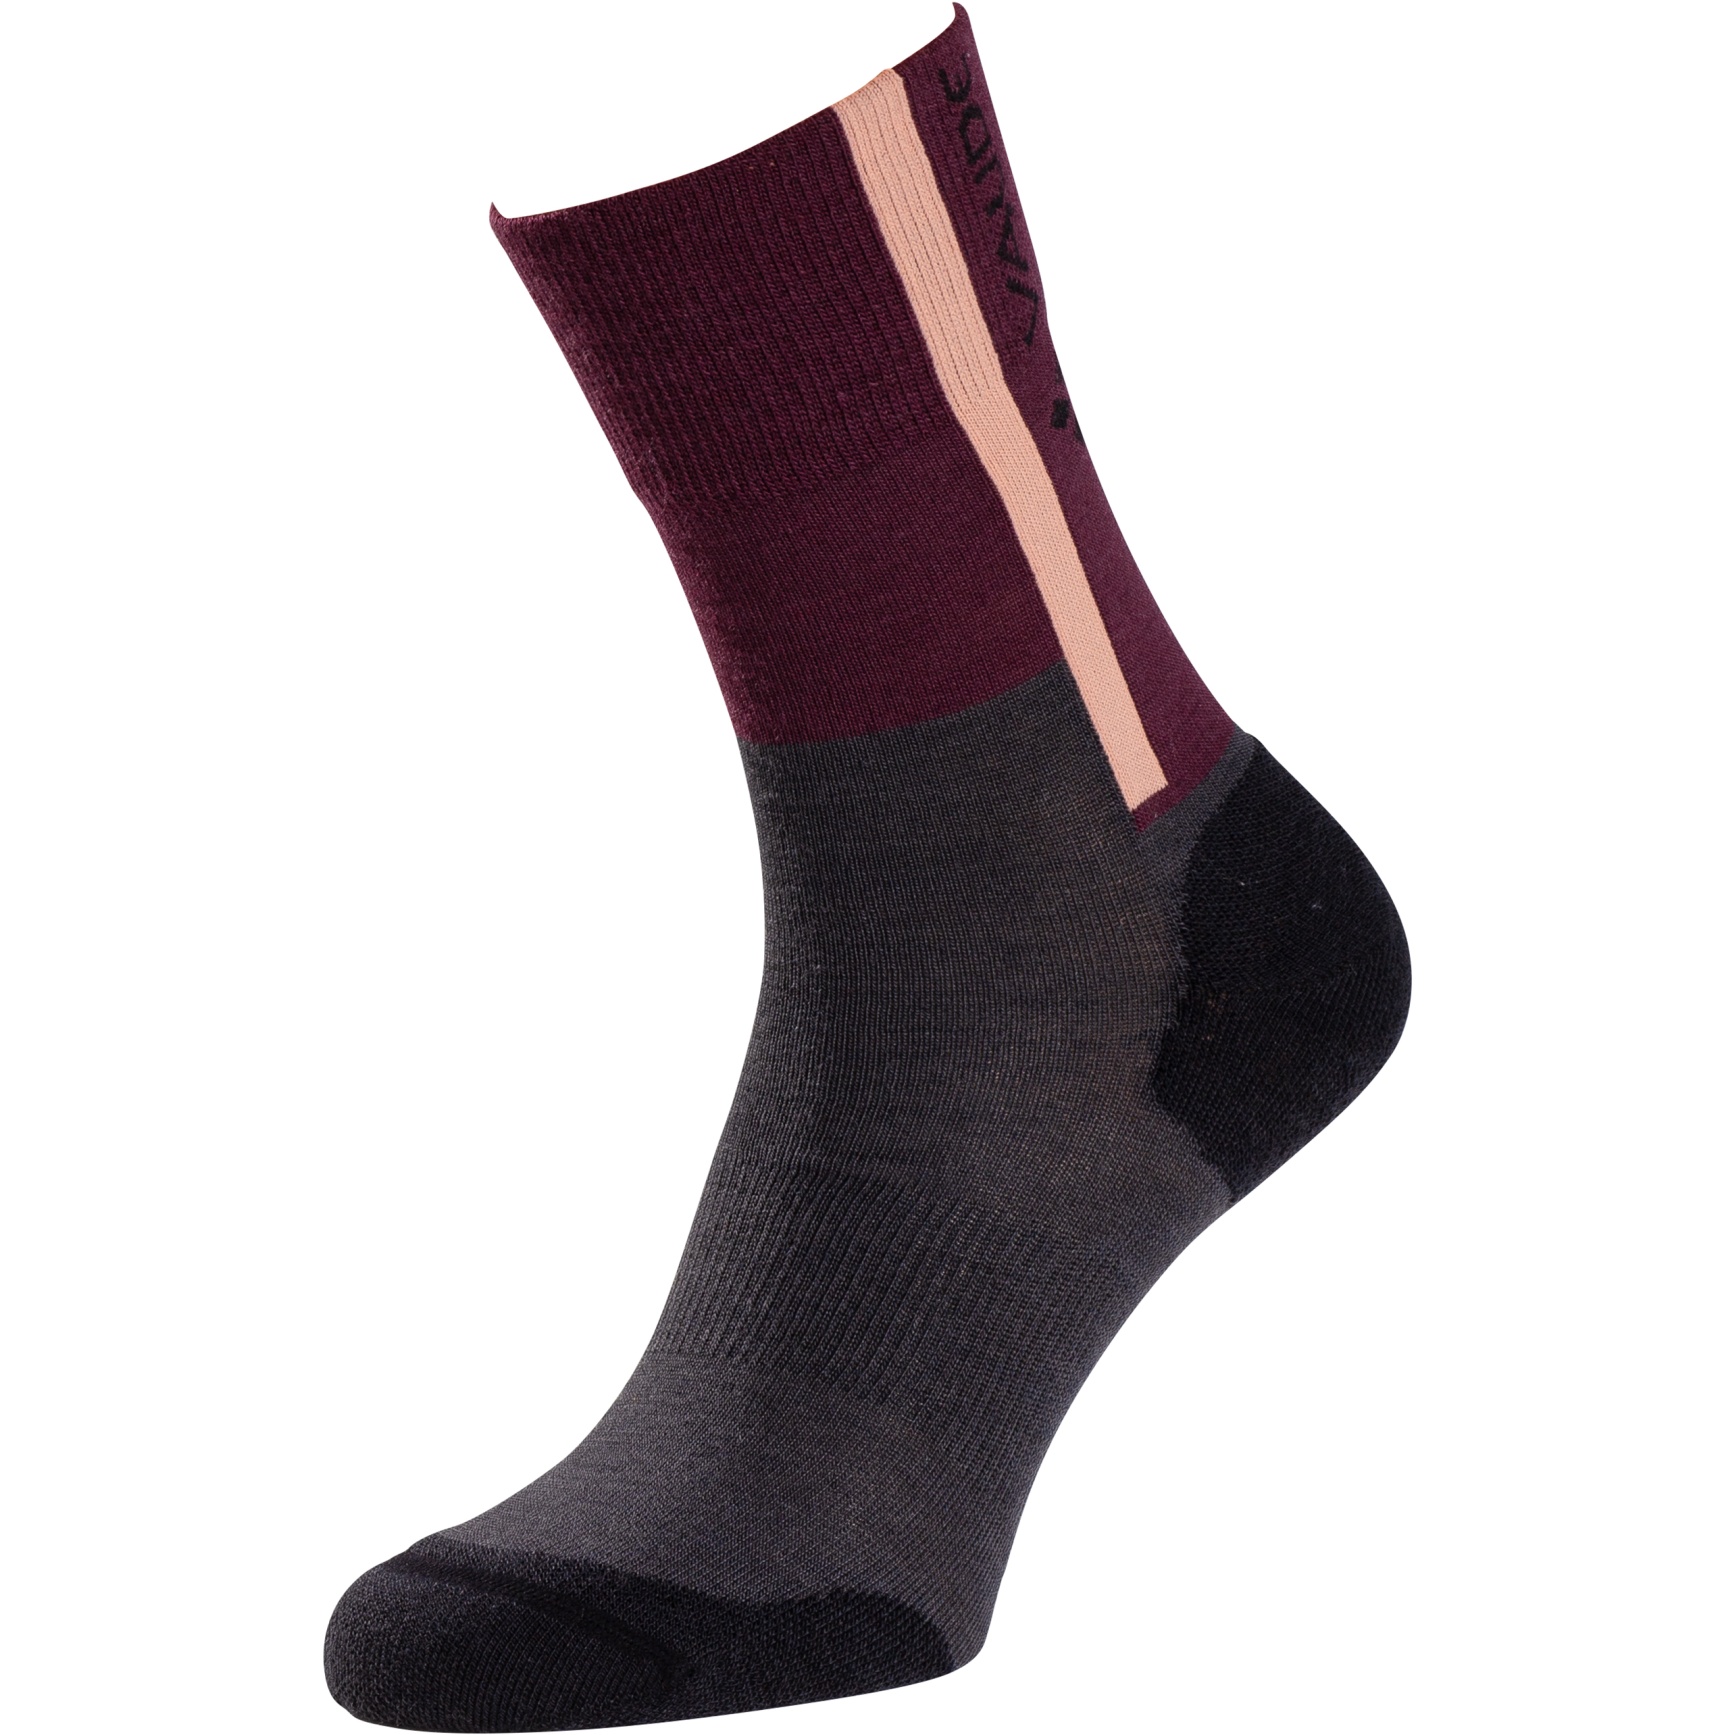 Produktbild von Vaude All Year Wool Socken - cassis uni